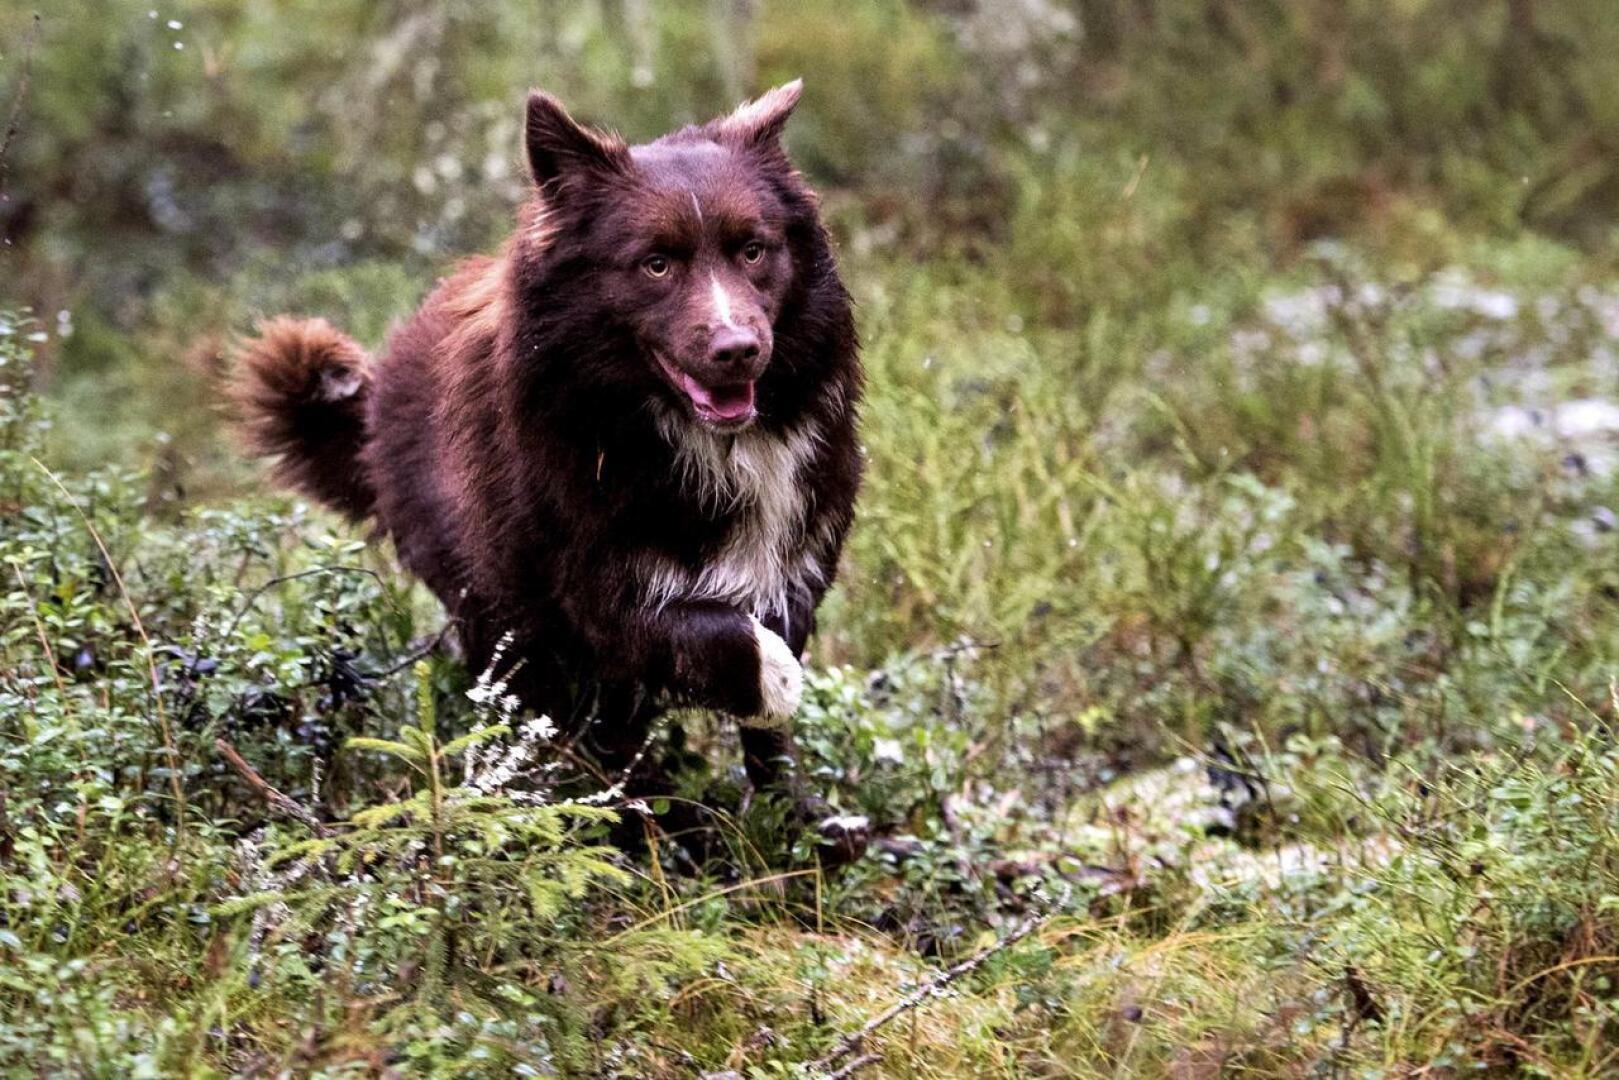 Suomessa ei ole havaittu Norjan kaltaista epidemiaa koirien sairastumisissa  – Kennelliitto kehottaa varovaisuuteen koirien kanssakäymisessä |  Keskipohjanmaa